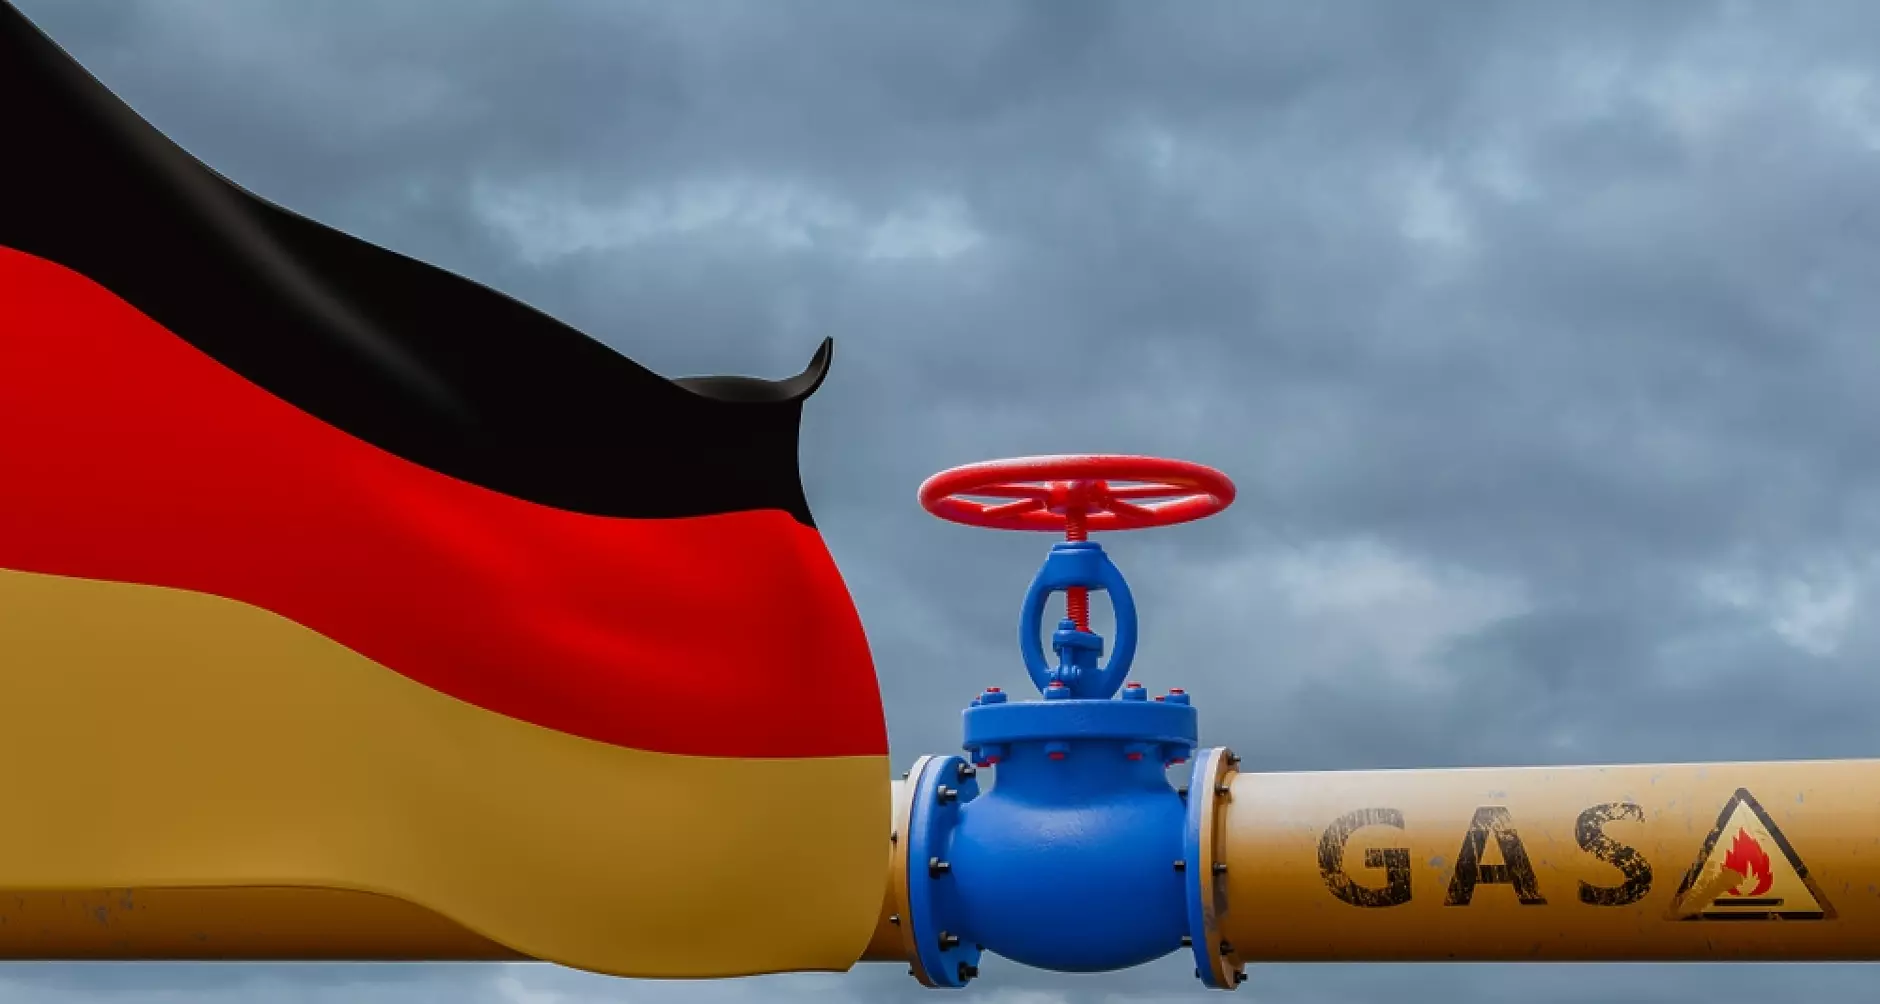 Проучване: Половината германци готови да плащат скъп газ в името на натиск над Русия